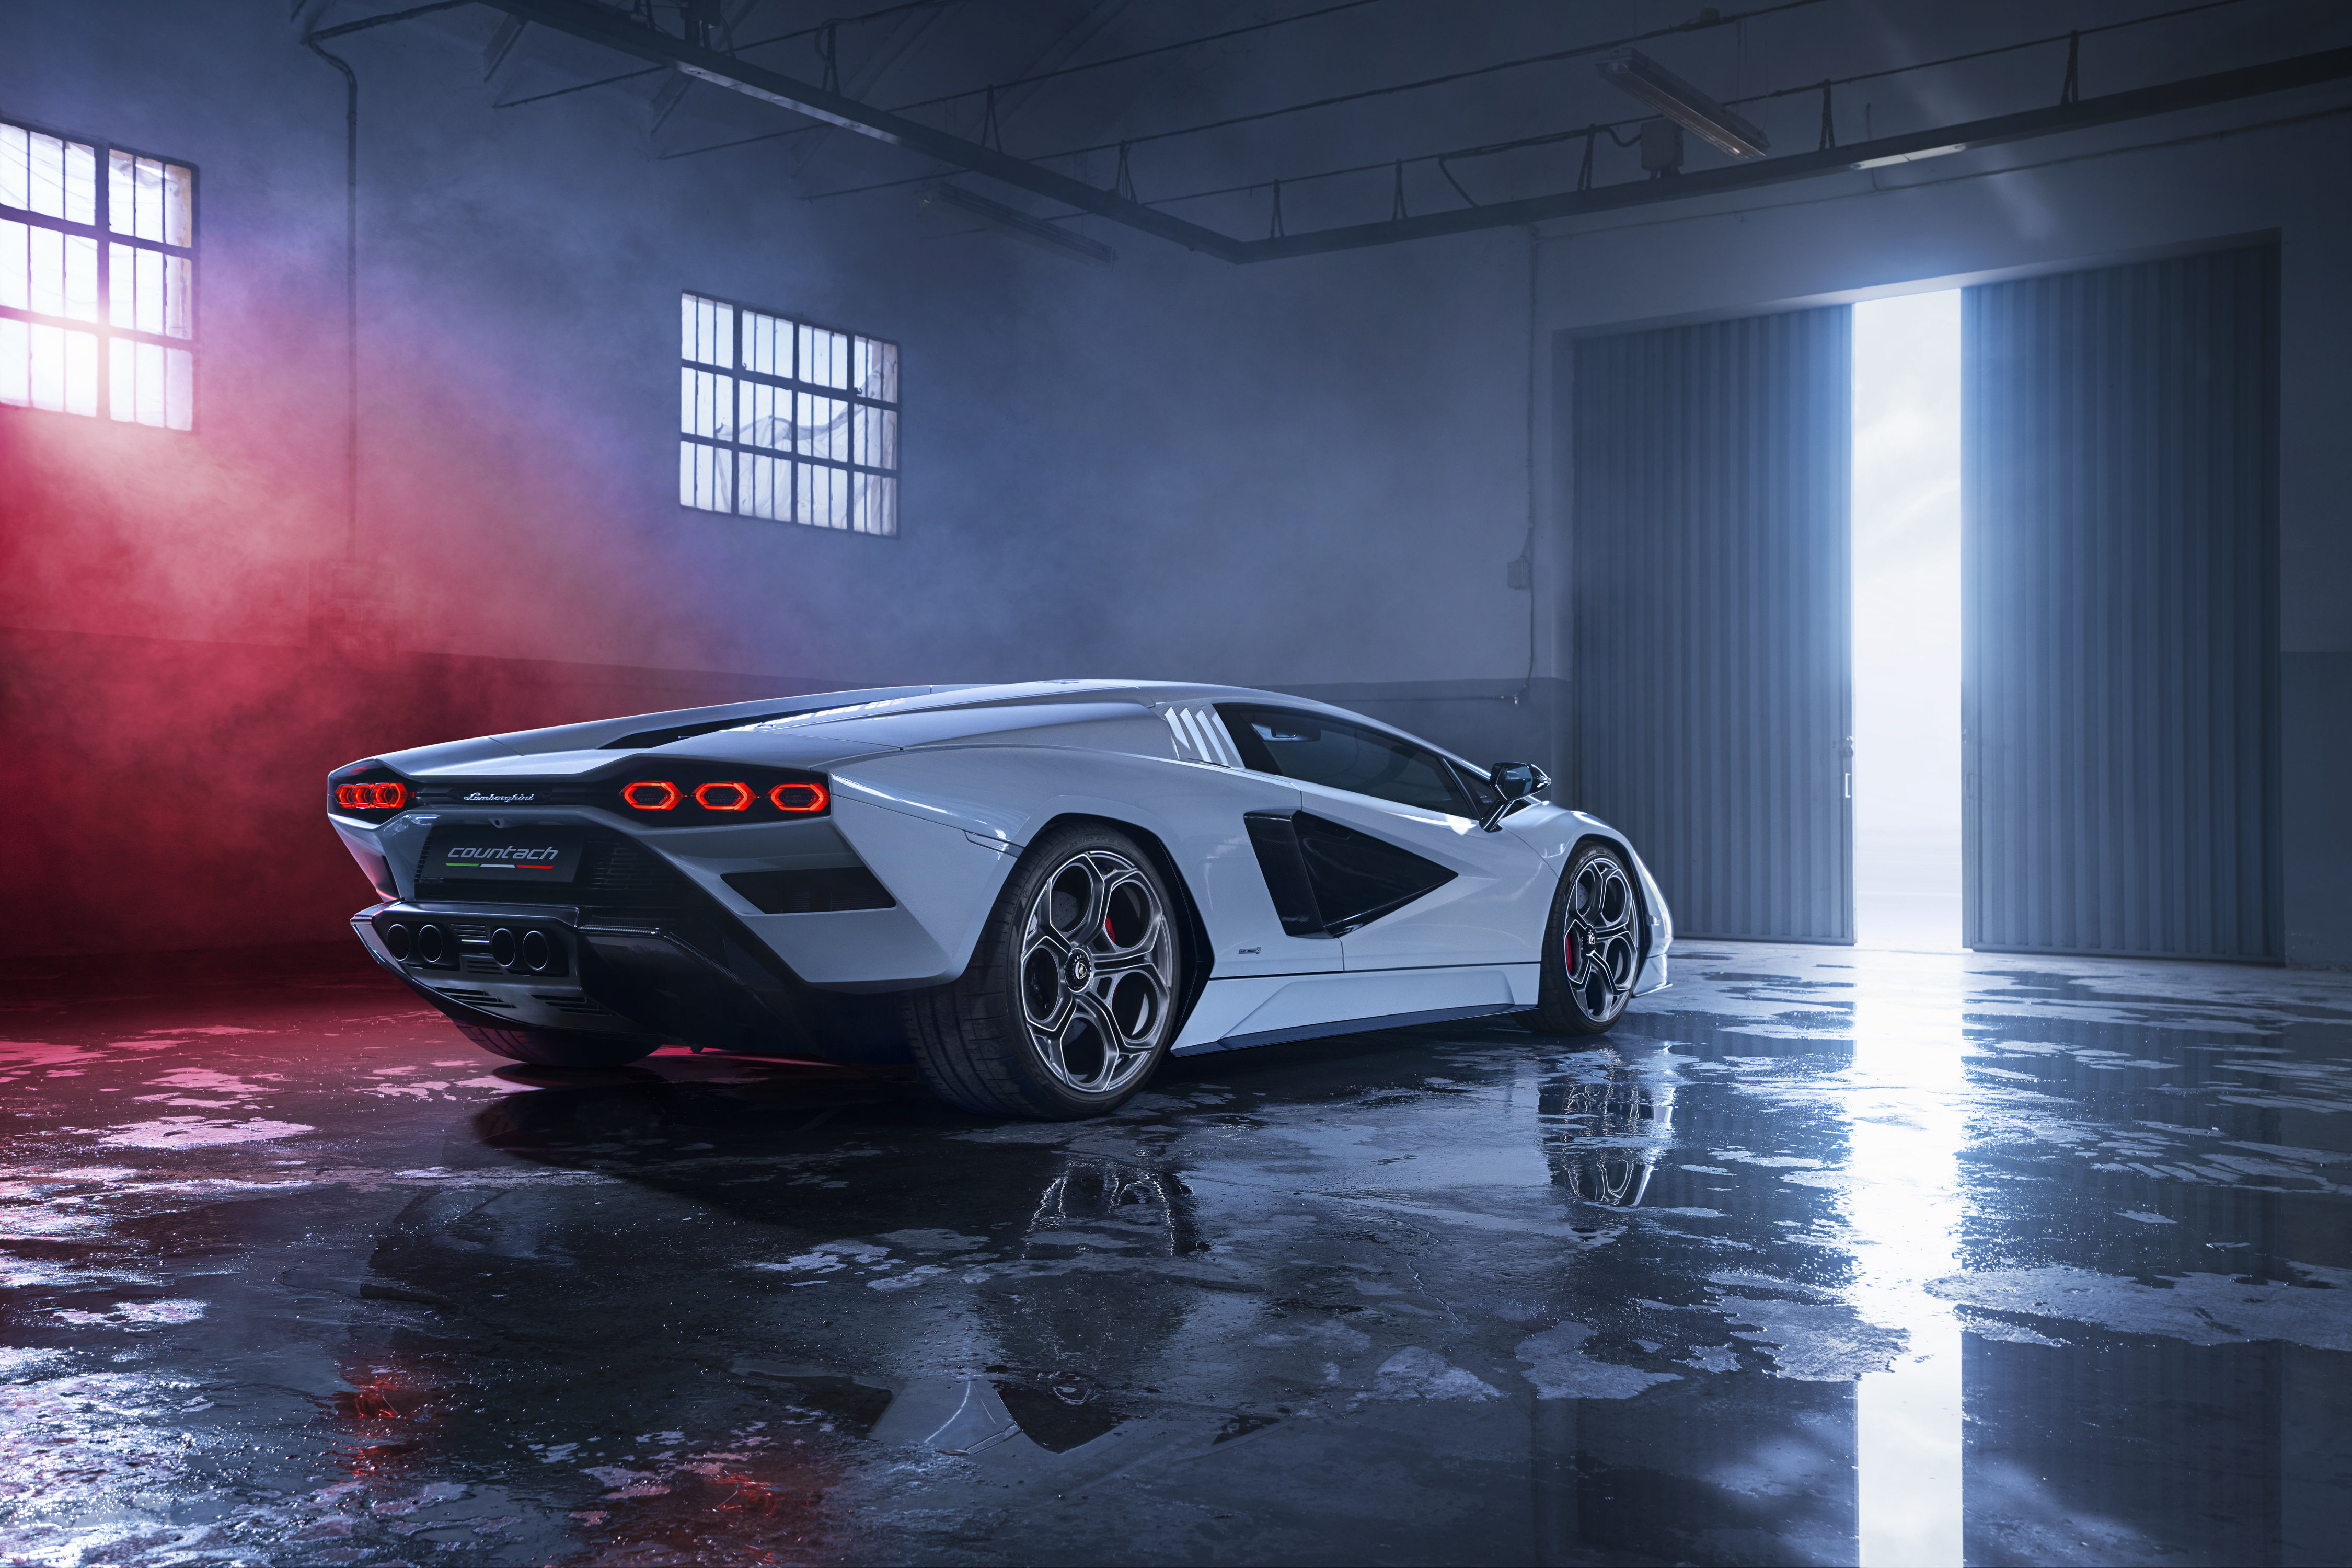 Hình nền siêu xe Lamborghini Countach sẽ khiến bạn phải trầm trồ vì nó quá hoàn hảo đến từng chi tiết nhỏ. Chiếc xe nổi tiếng với thiết kế độc đáo và khả năng tốc độ nhanh chóng làm say mê bao người, và giờ đây, hãy để nó trở thành các hình nền độc đáo trên thiết bị của bạn.